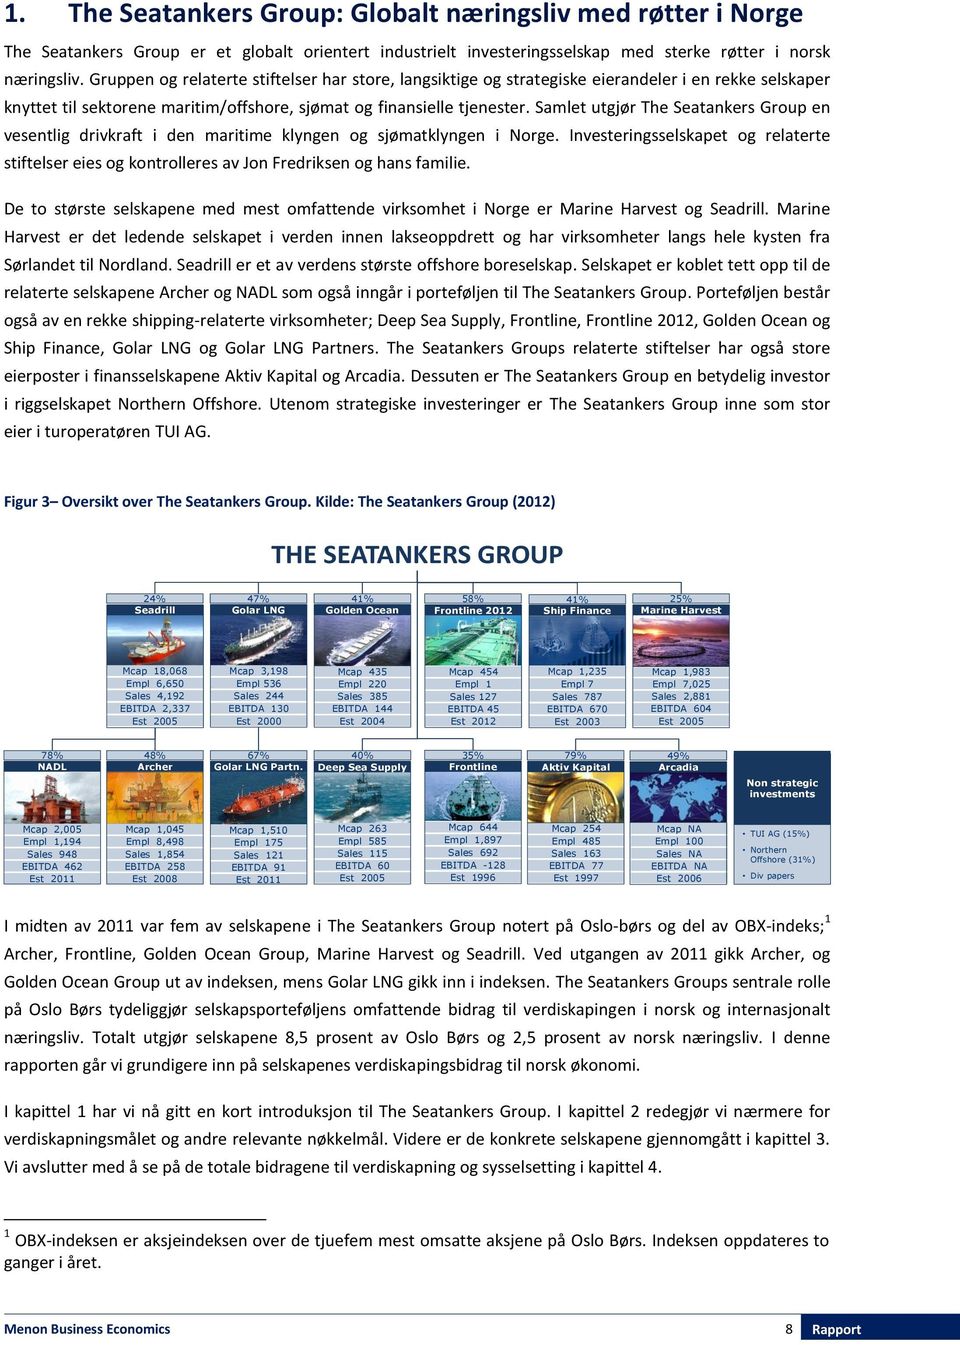 Samlet utgjør The Seatankers Group en vesentlig drivkraft i den maritime klyngen og sjømatklyngen i Norge.